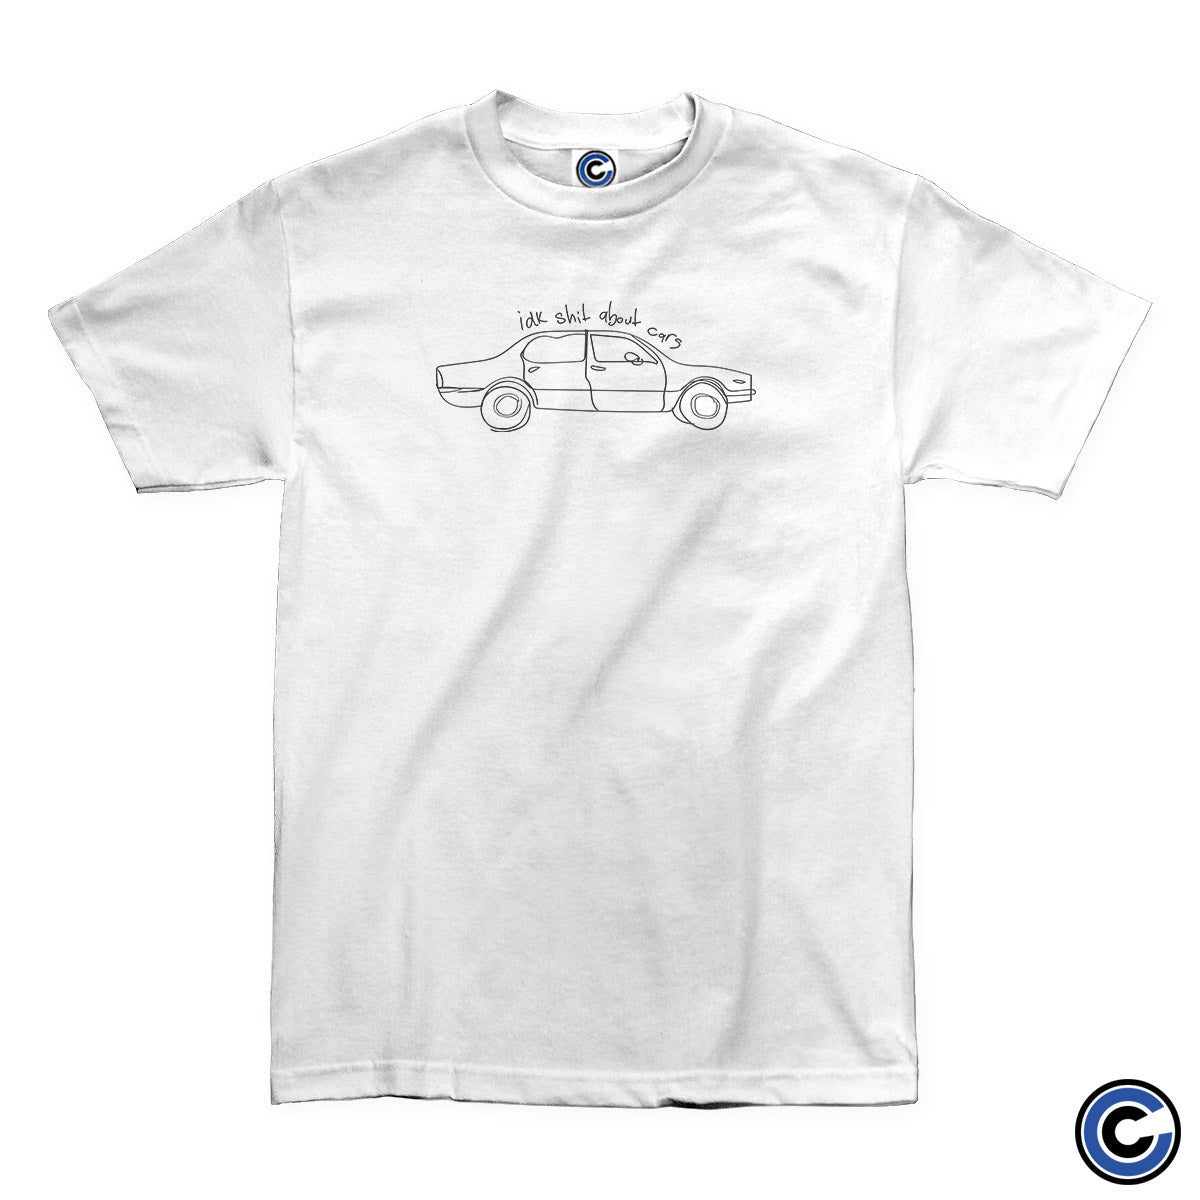 Evan Honer "Car" Shirt